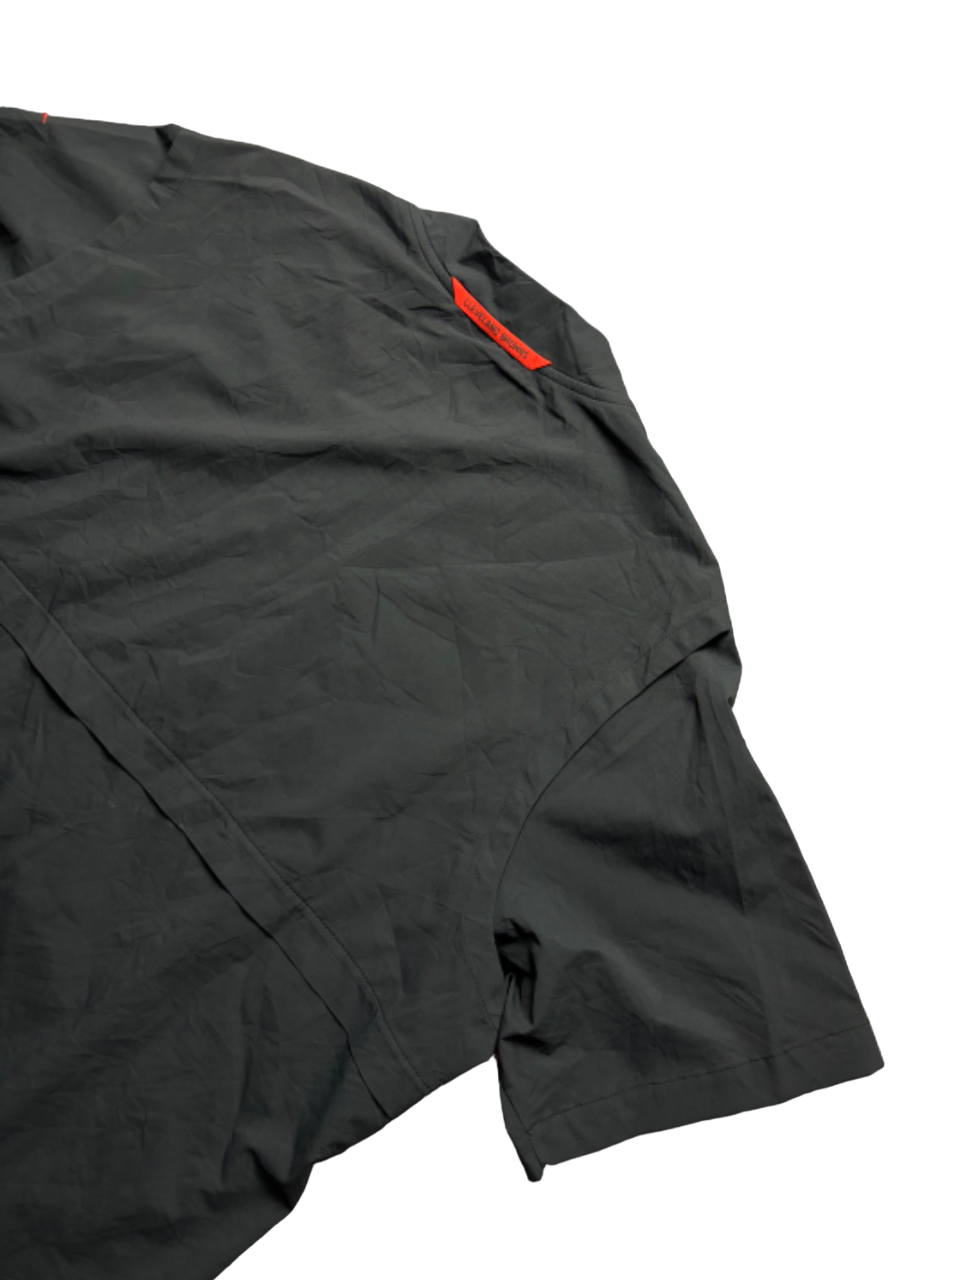 Camiseta nylon Nike X NFL Cleveland Browns oversize - Large